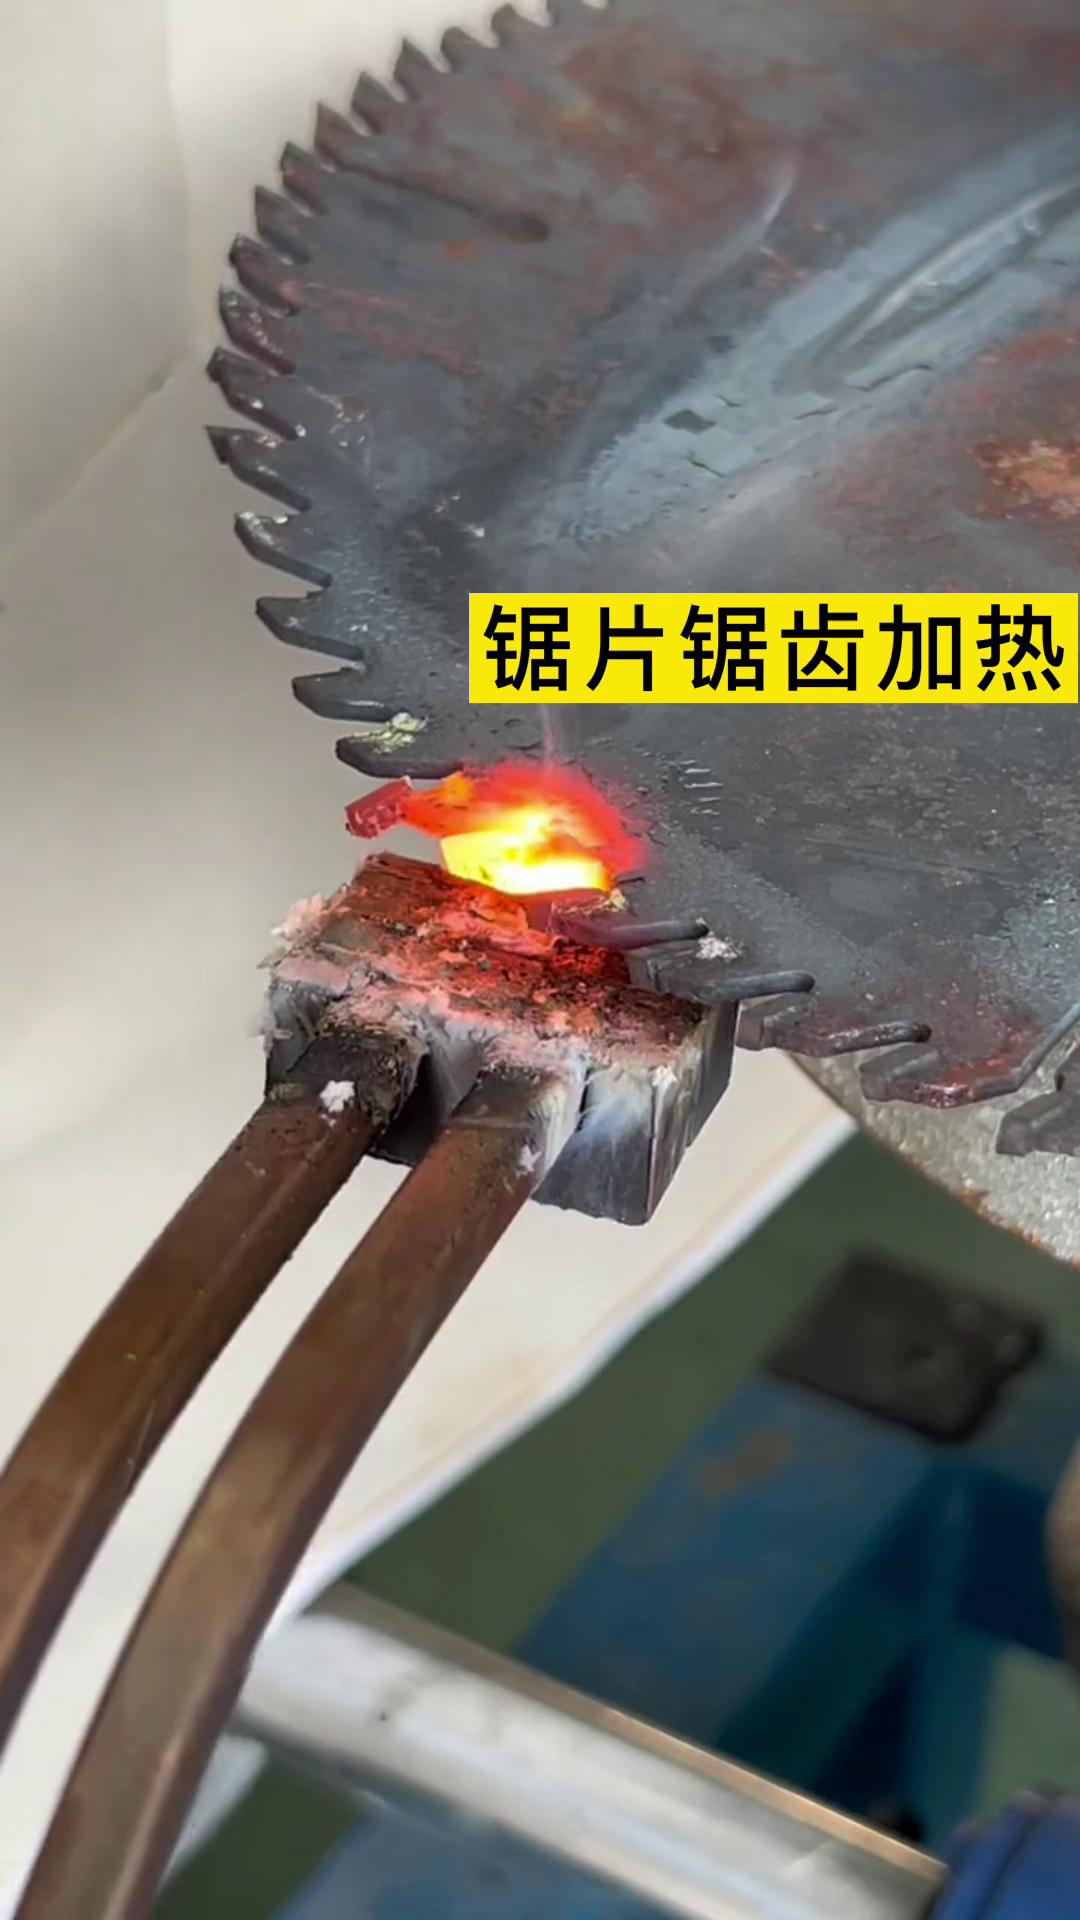 手持高频加热机 锯片锯齿加热 可以合金焊接取舍 也可以淬火热处理